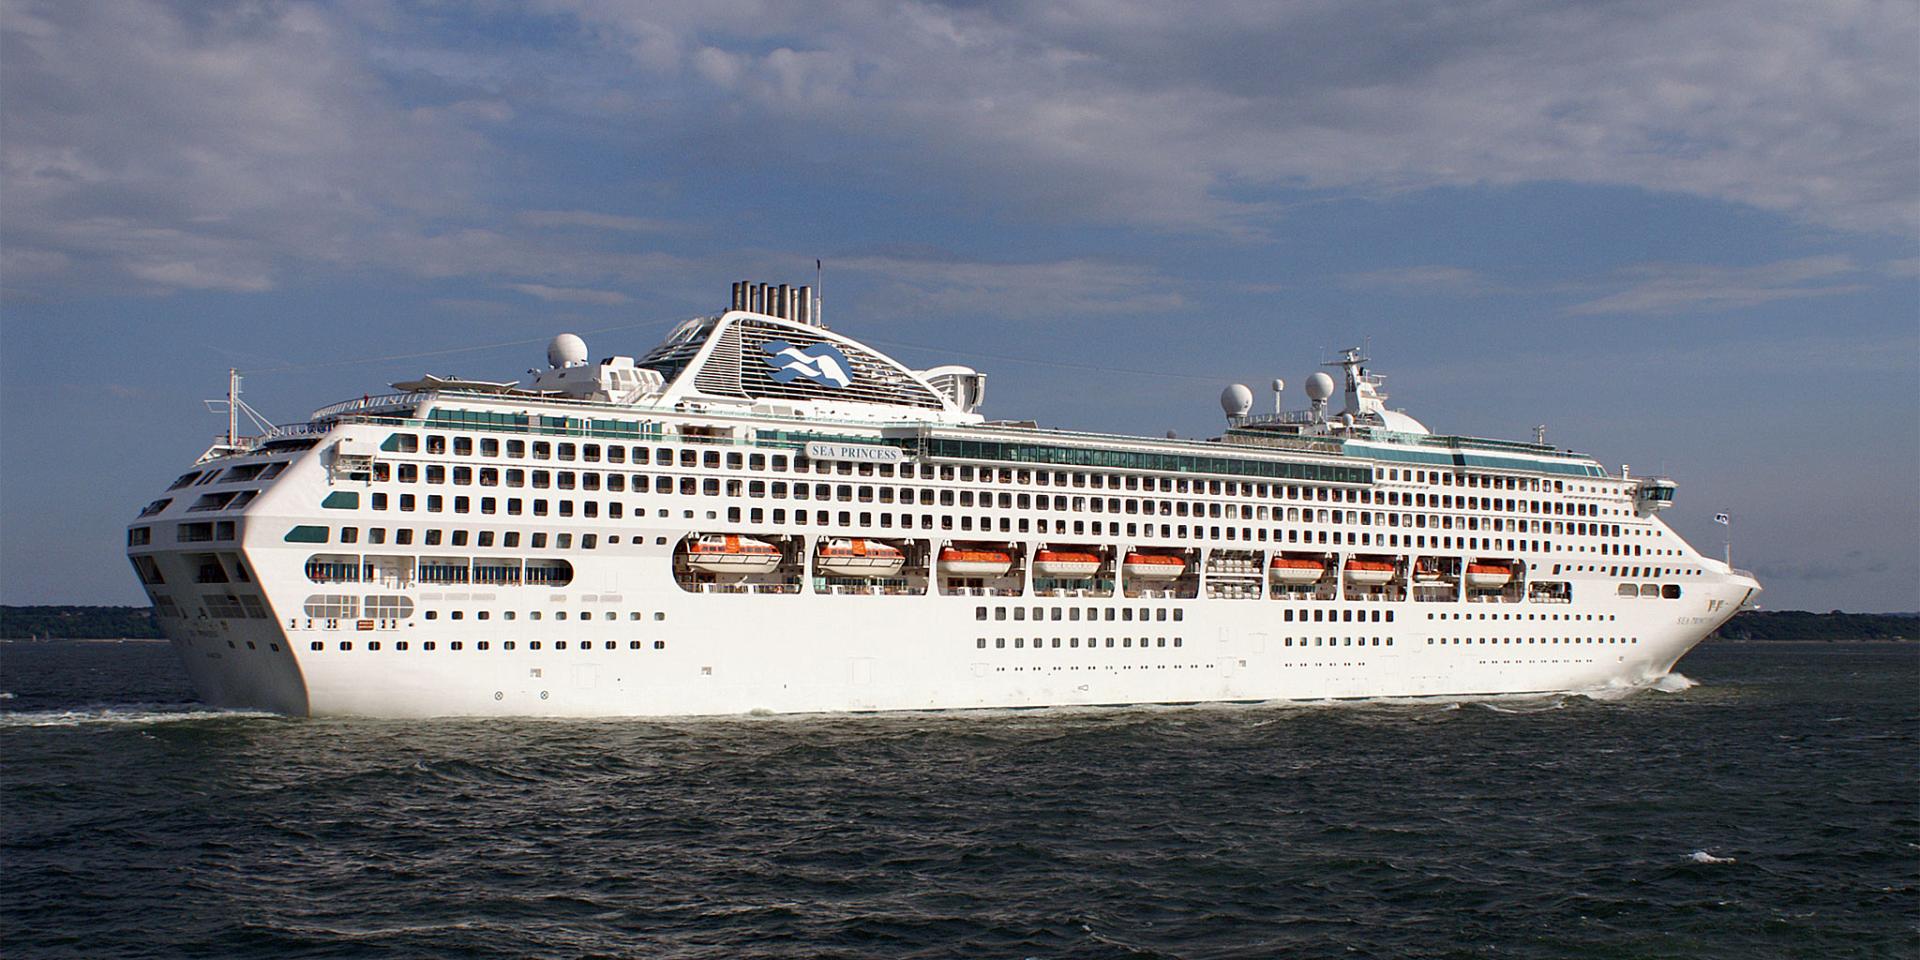 sea princess catamaran cruises photos